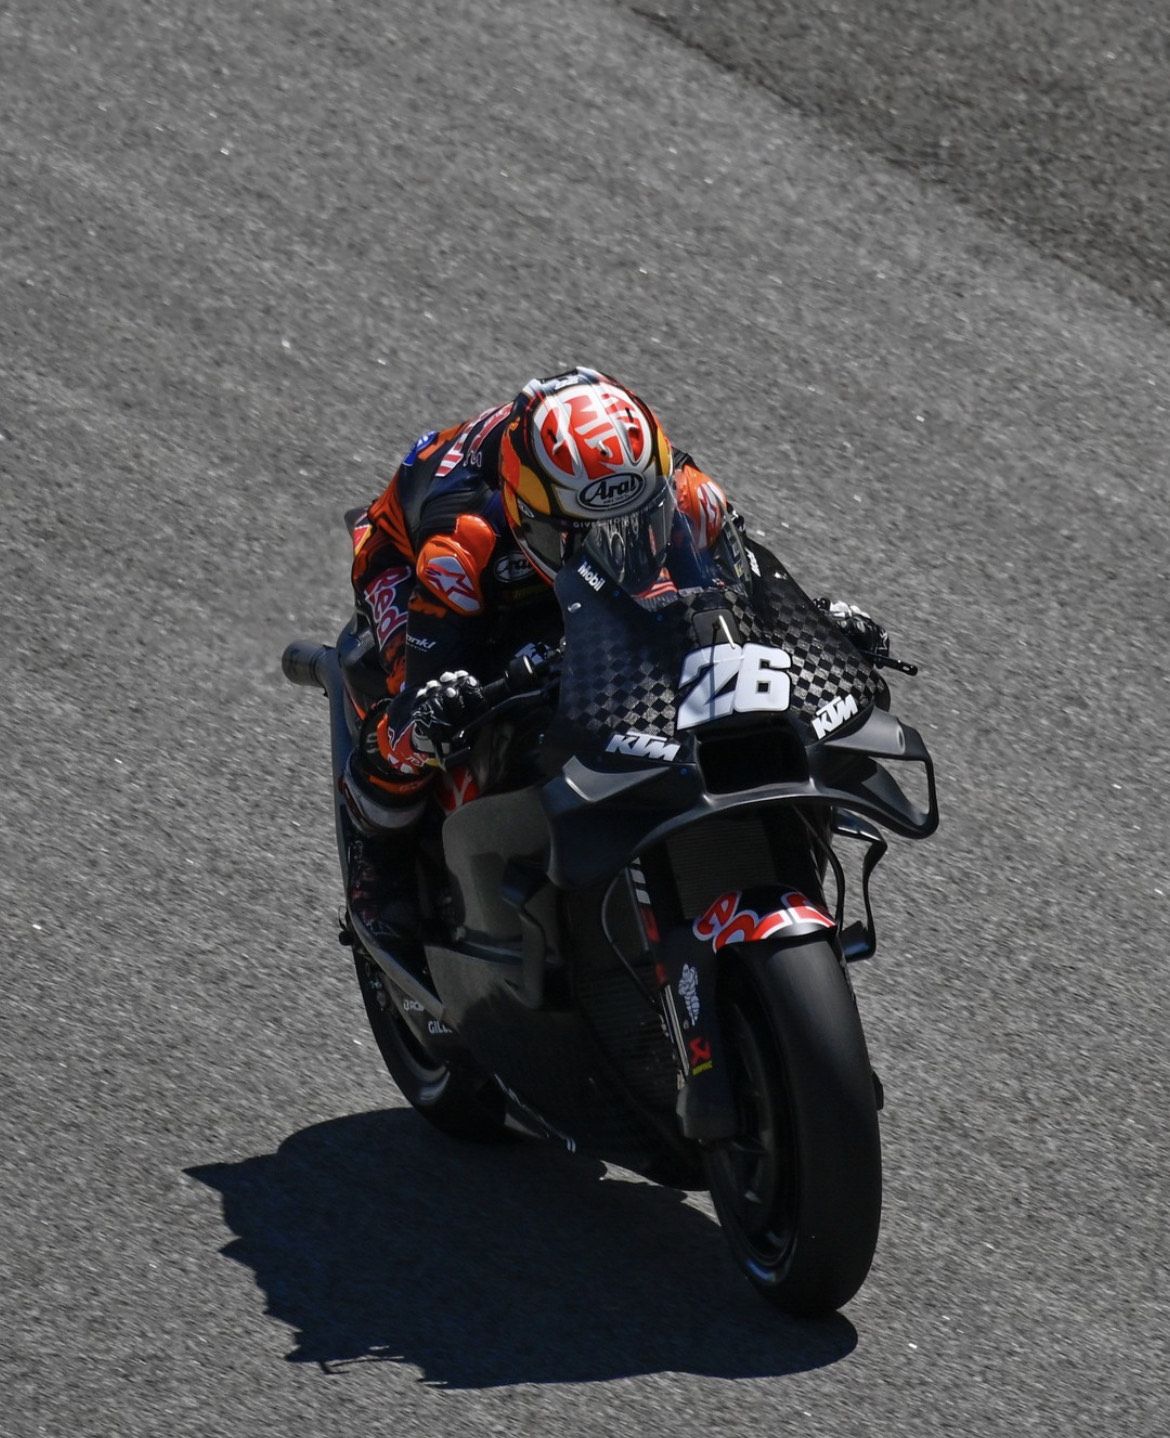 Pedrosa durant la jornada de test d'aquest dimarts, amb la nova KTM / MotoGP